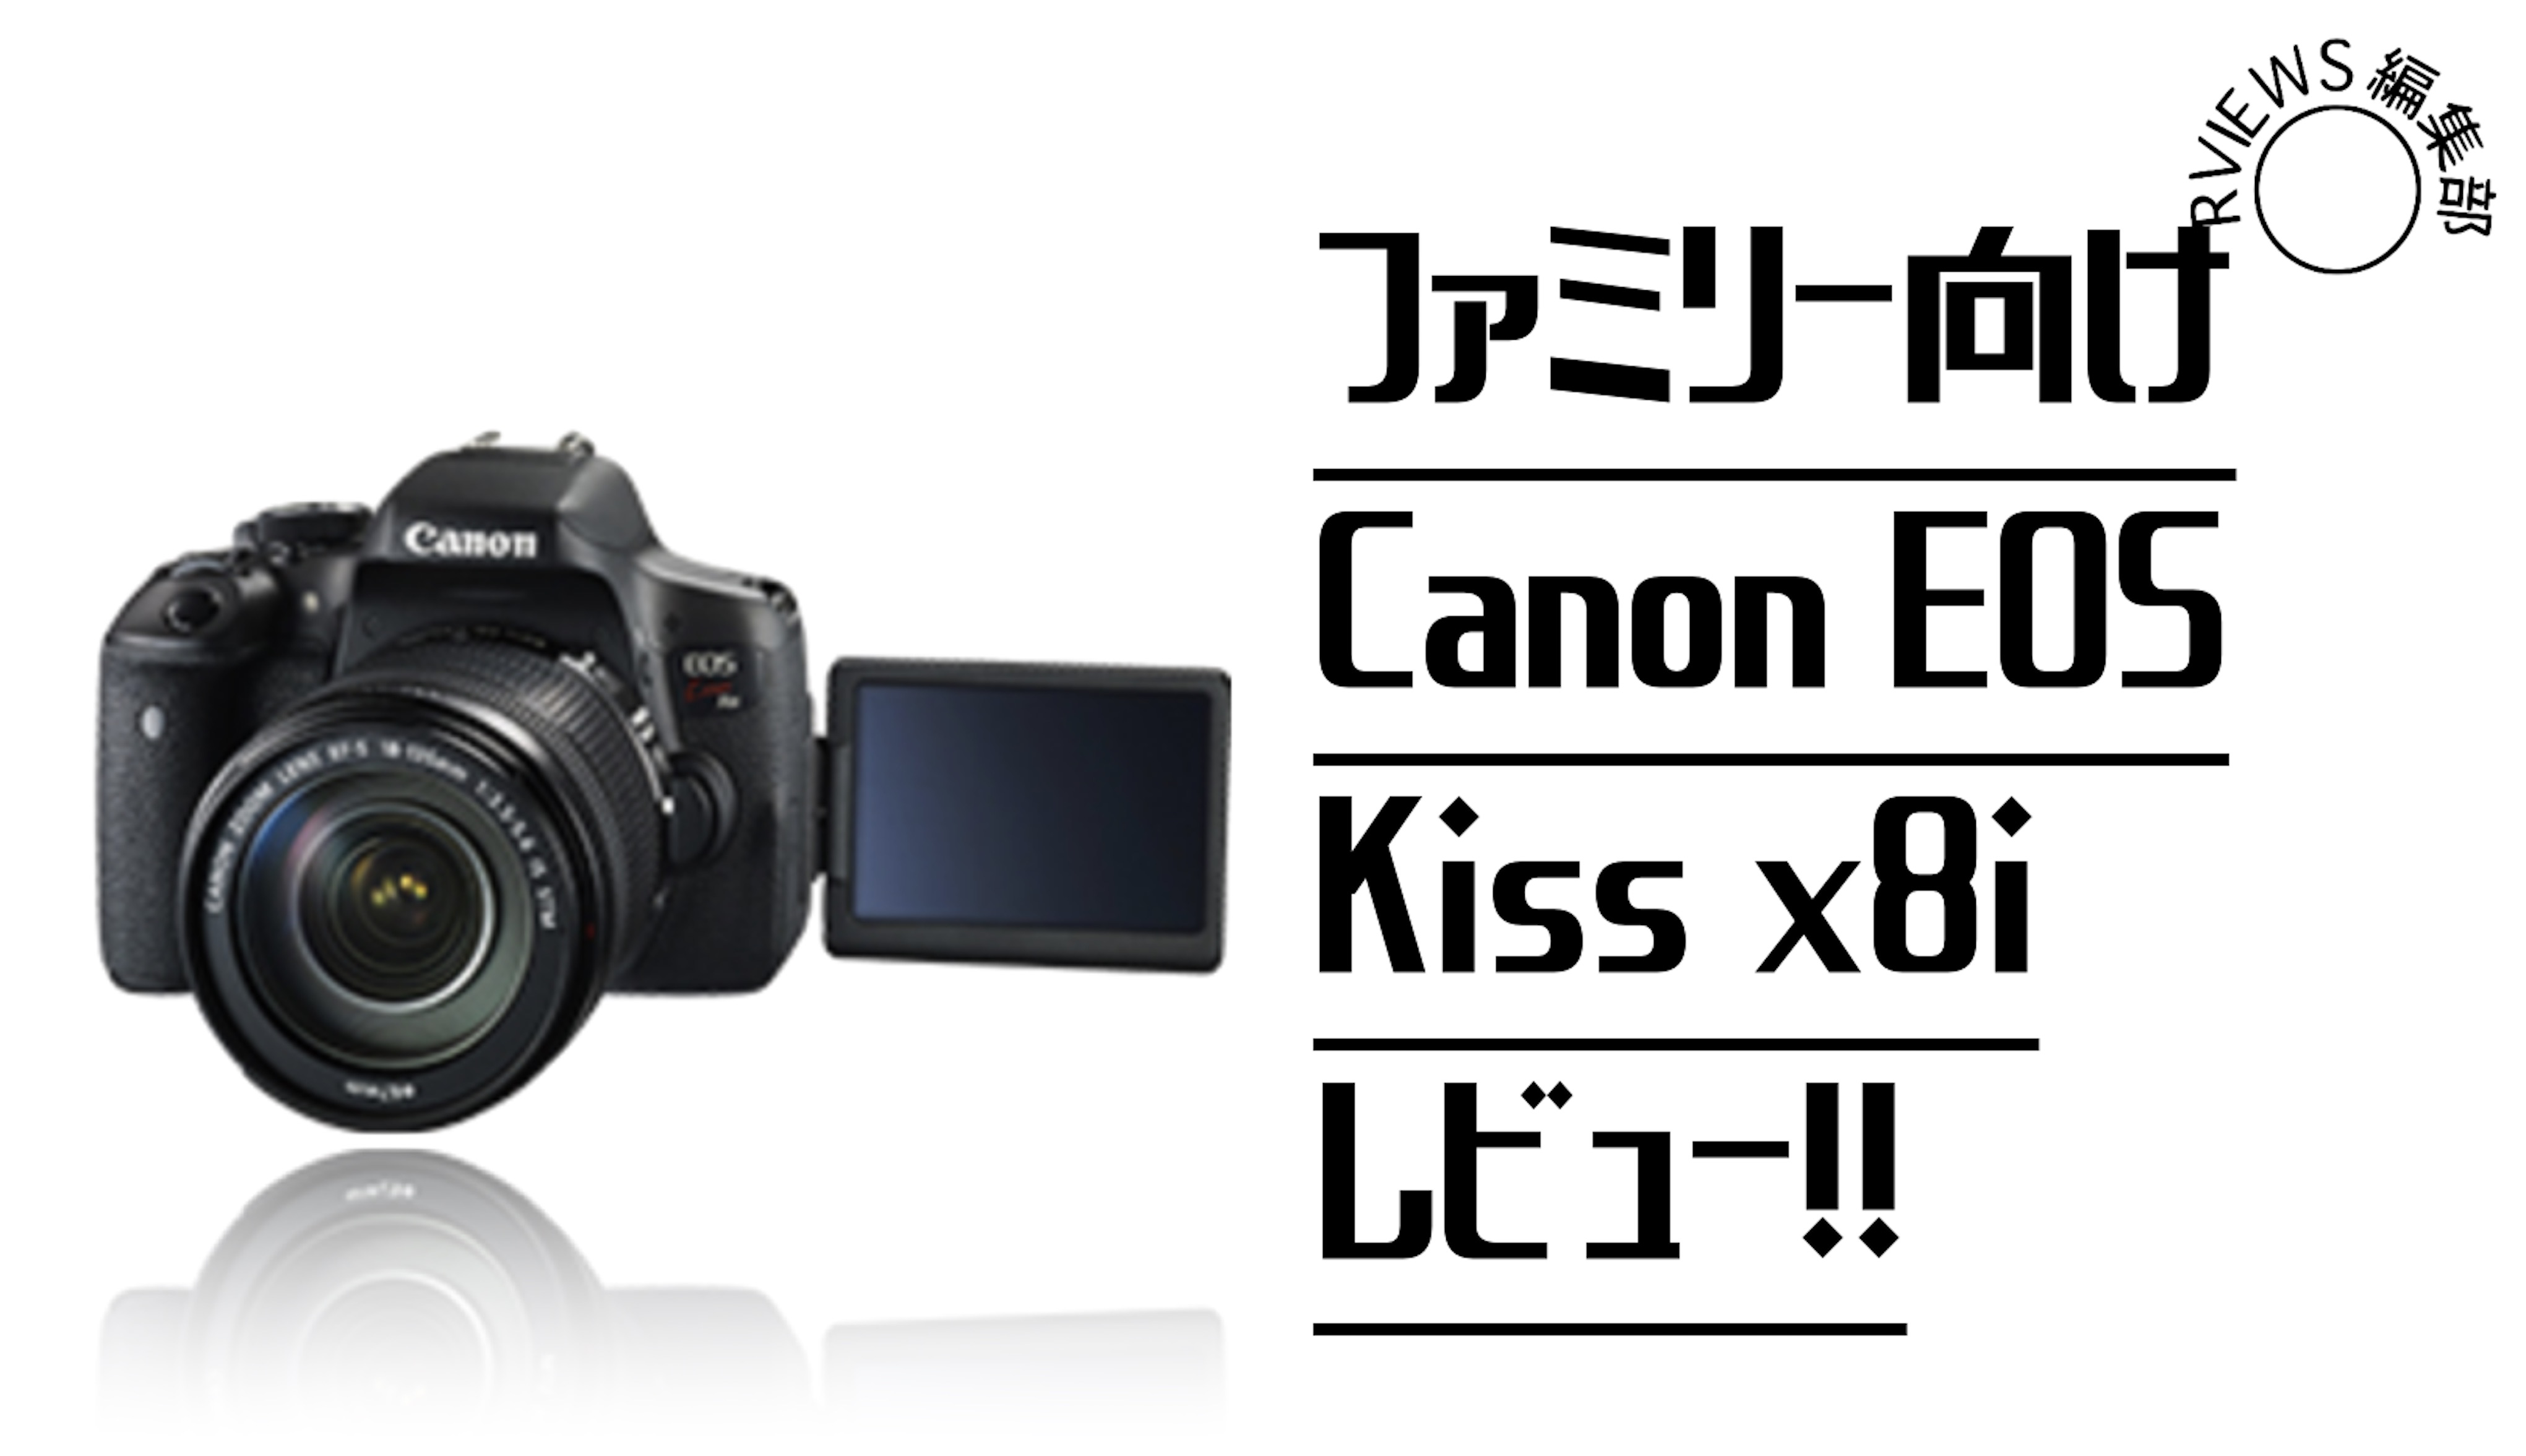 ファミリー向けエントリモデル「Canon EOS kiss x8i」をレビュー 